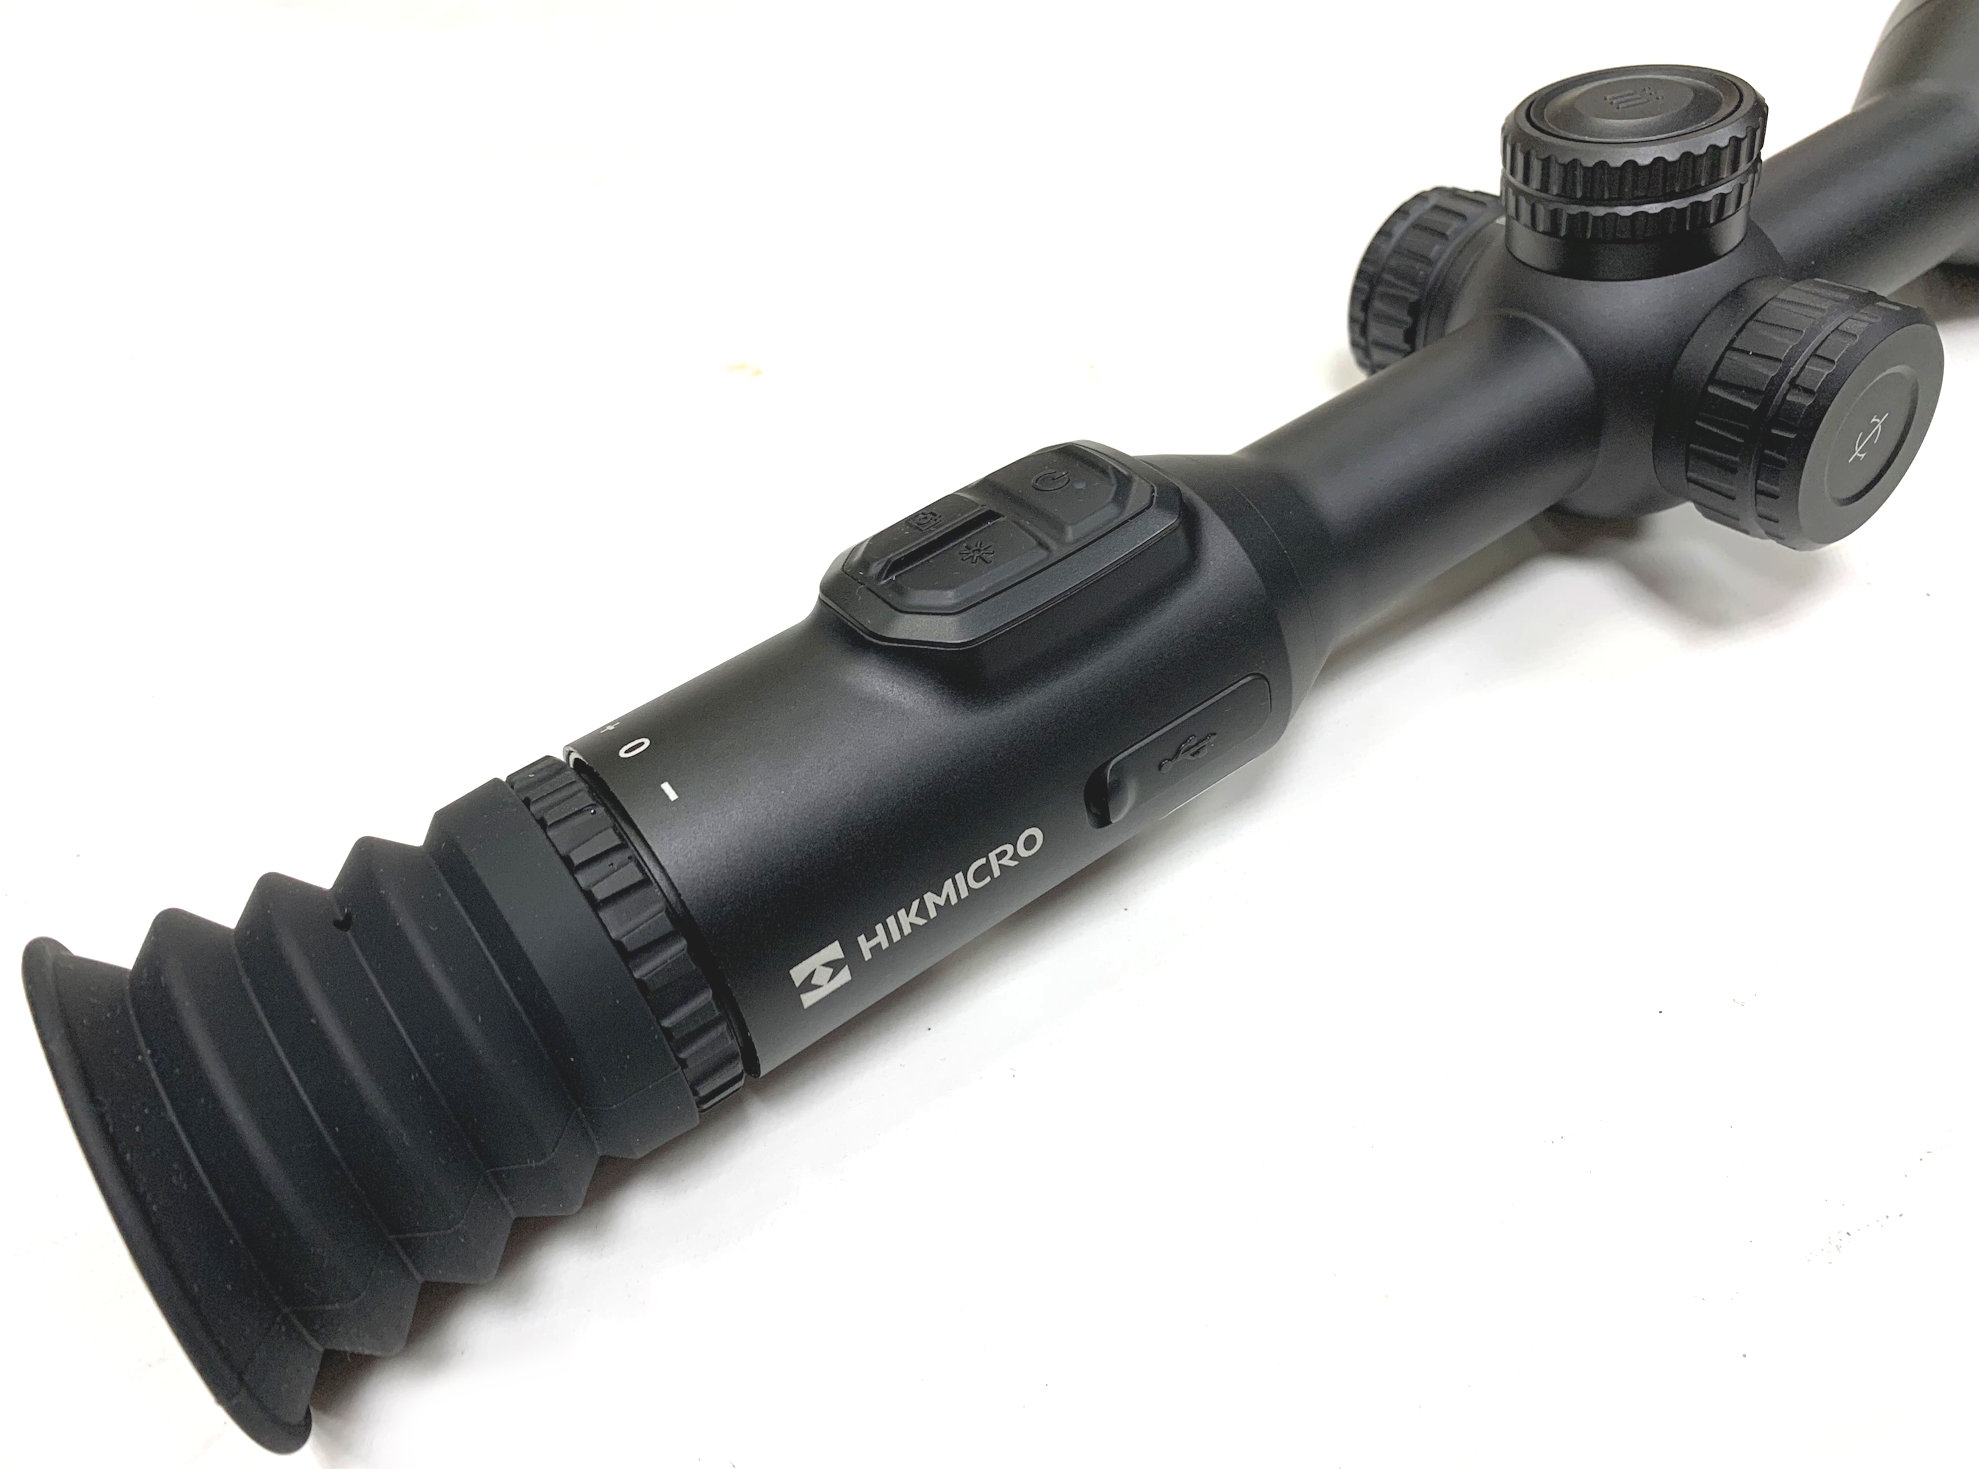 hikmicro alpex 4k lrf digital rifle scope